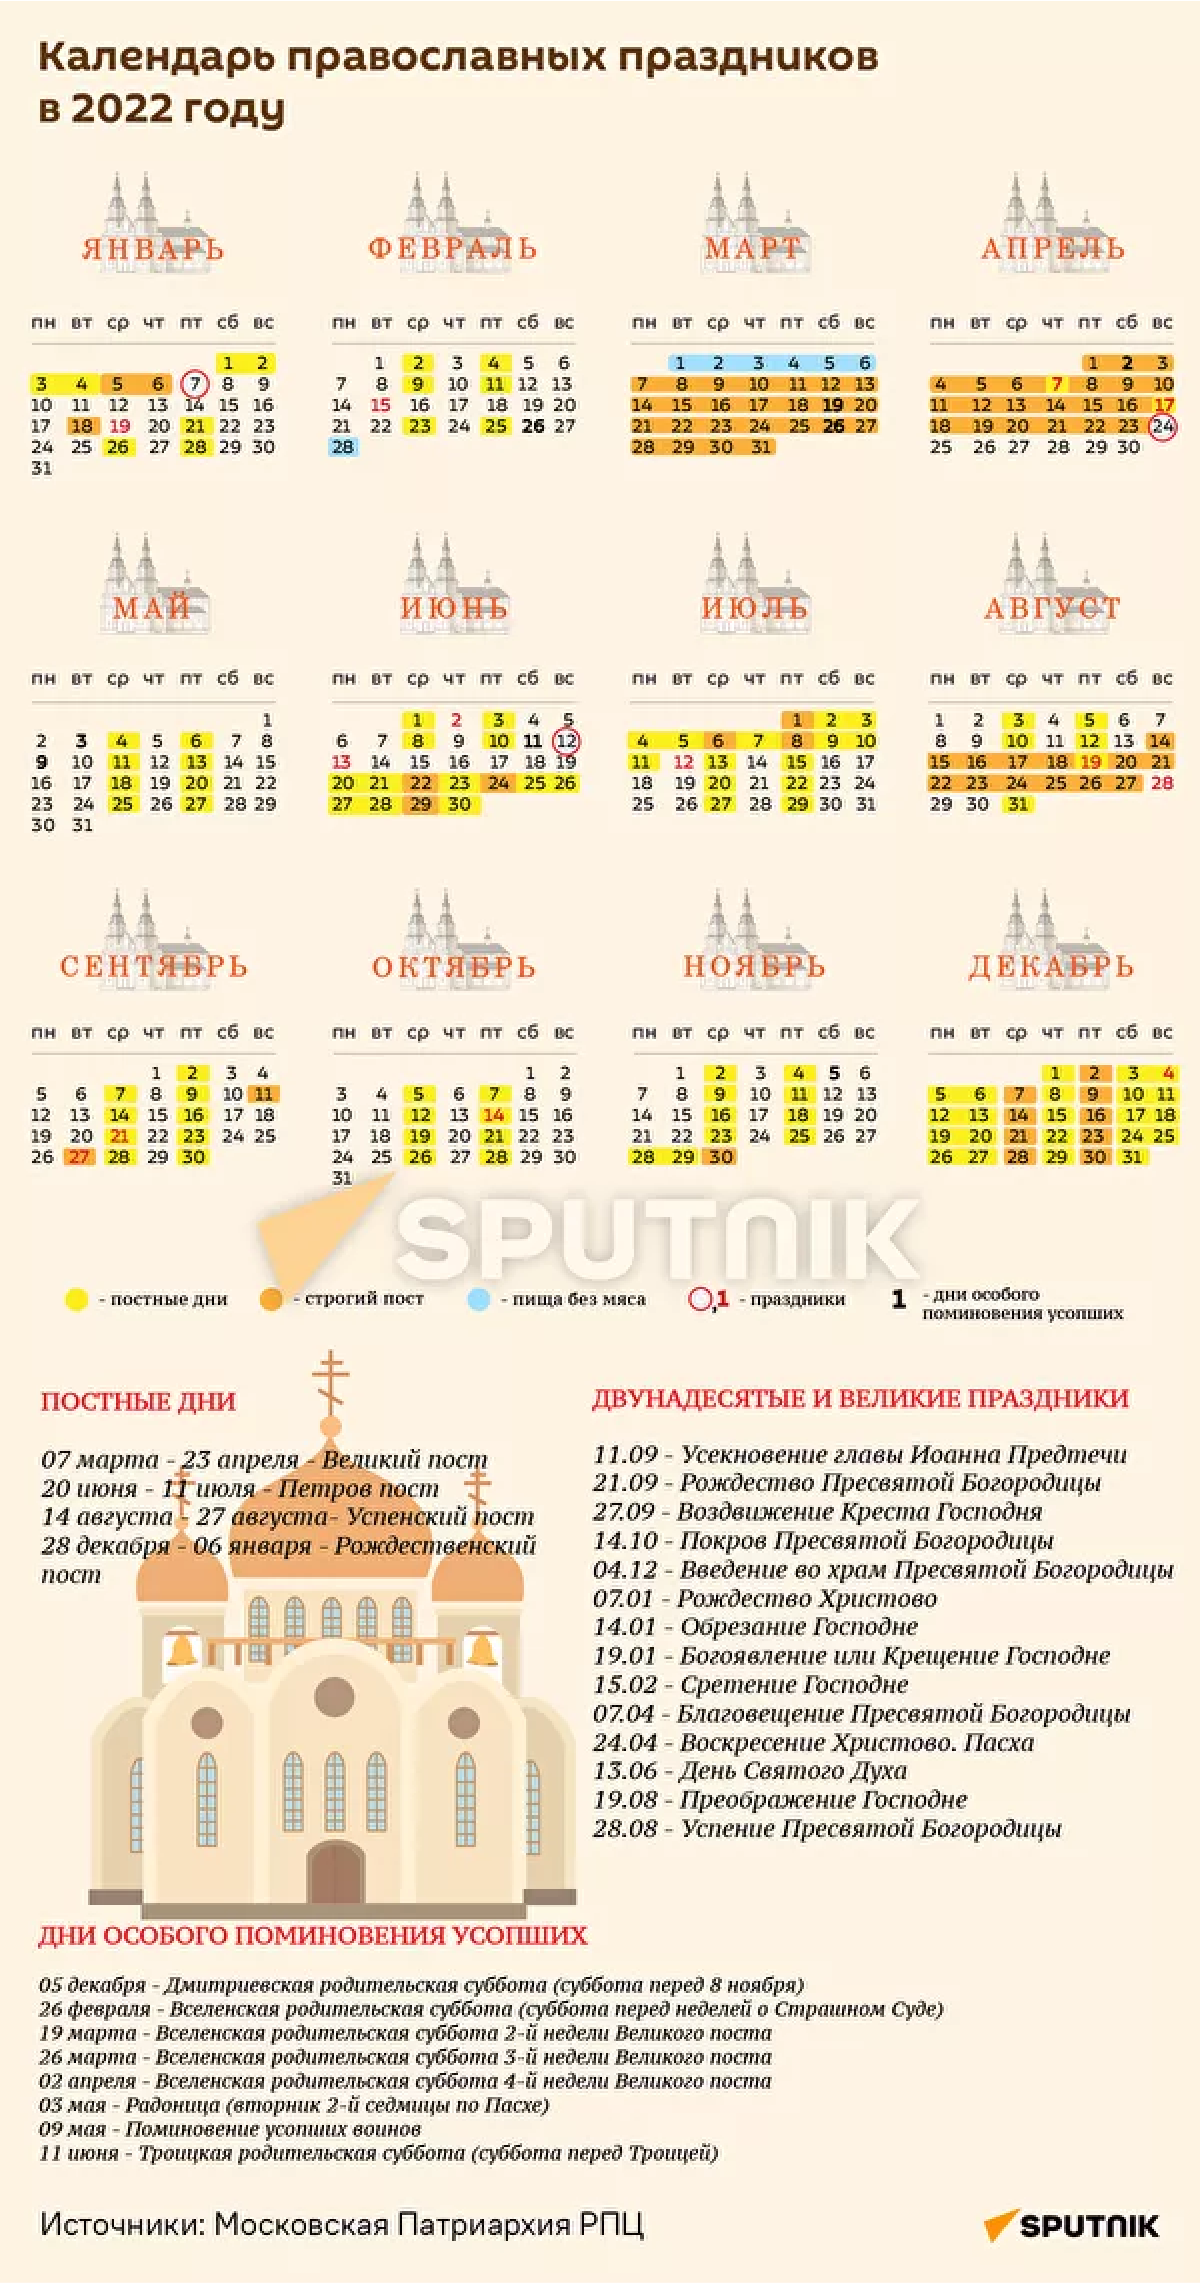 Календарь православных праздников на 2022 году - Sputnik Казахстан, 1920, 27.09.2021